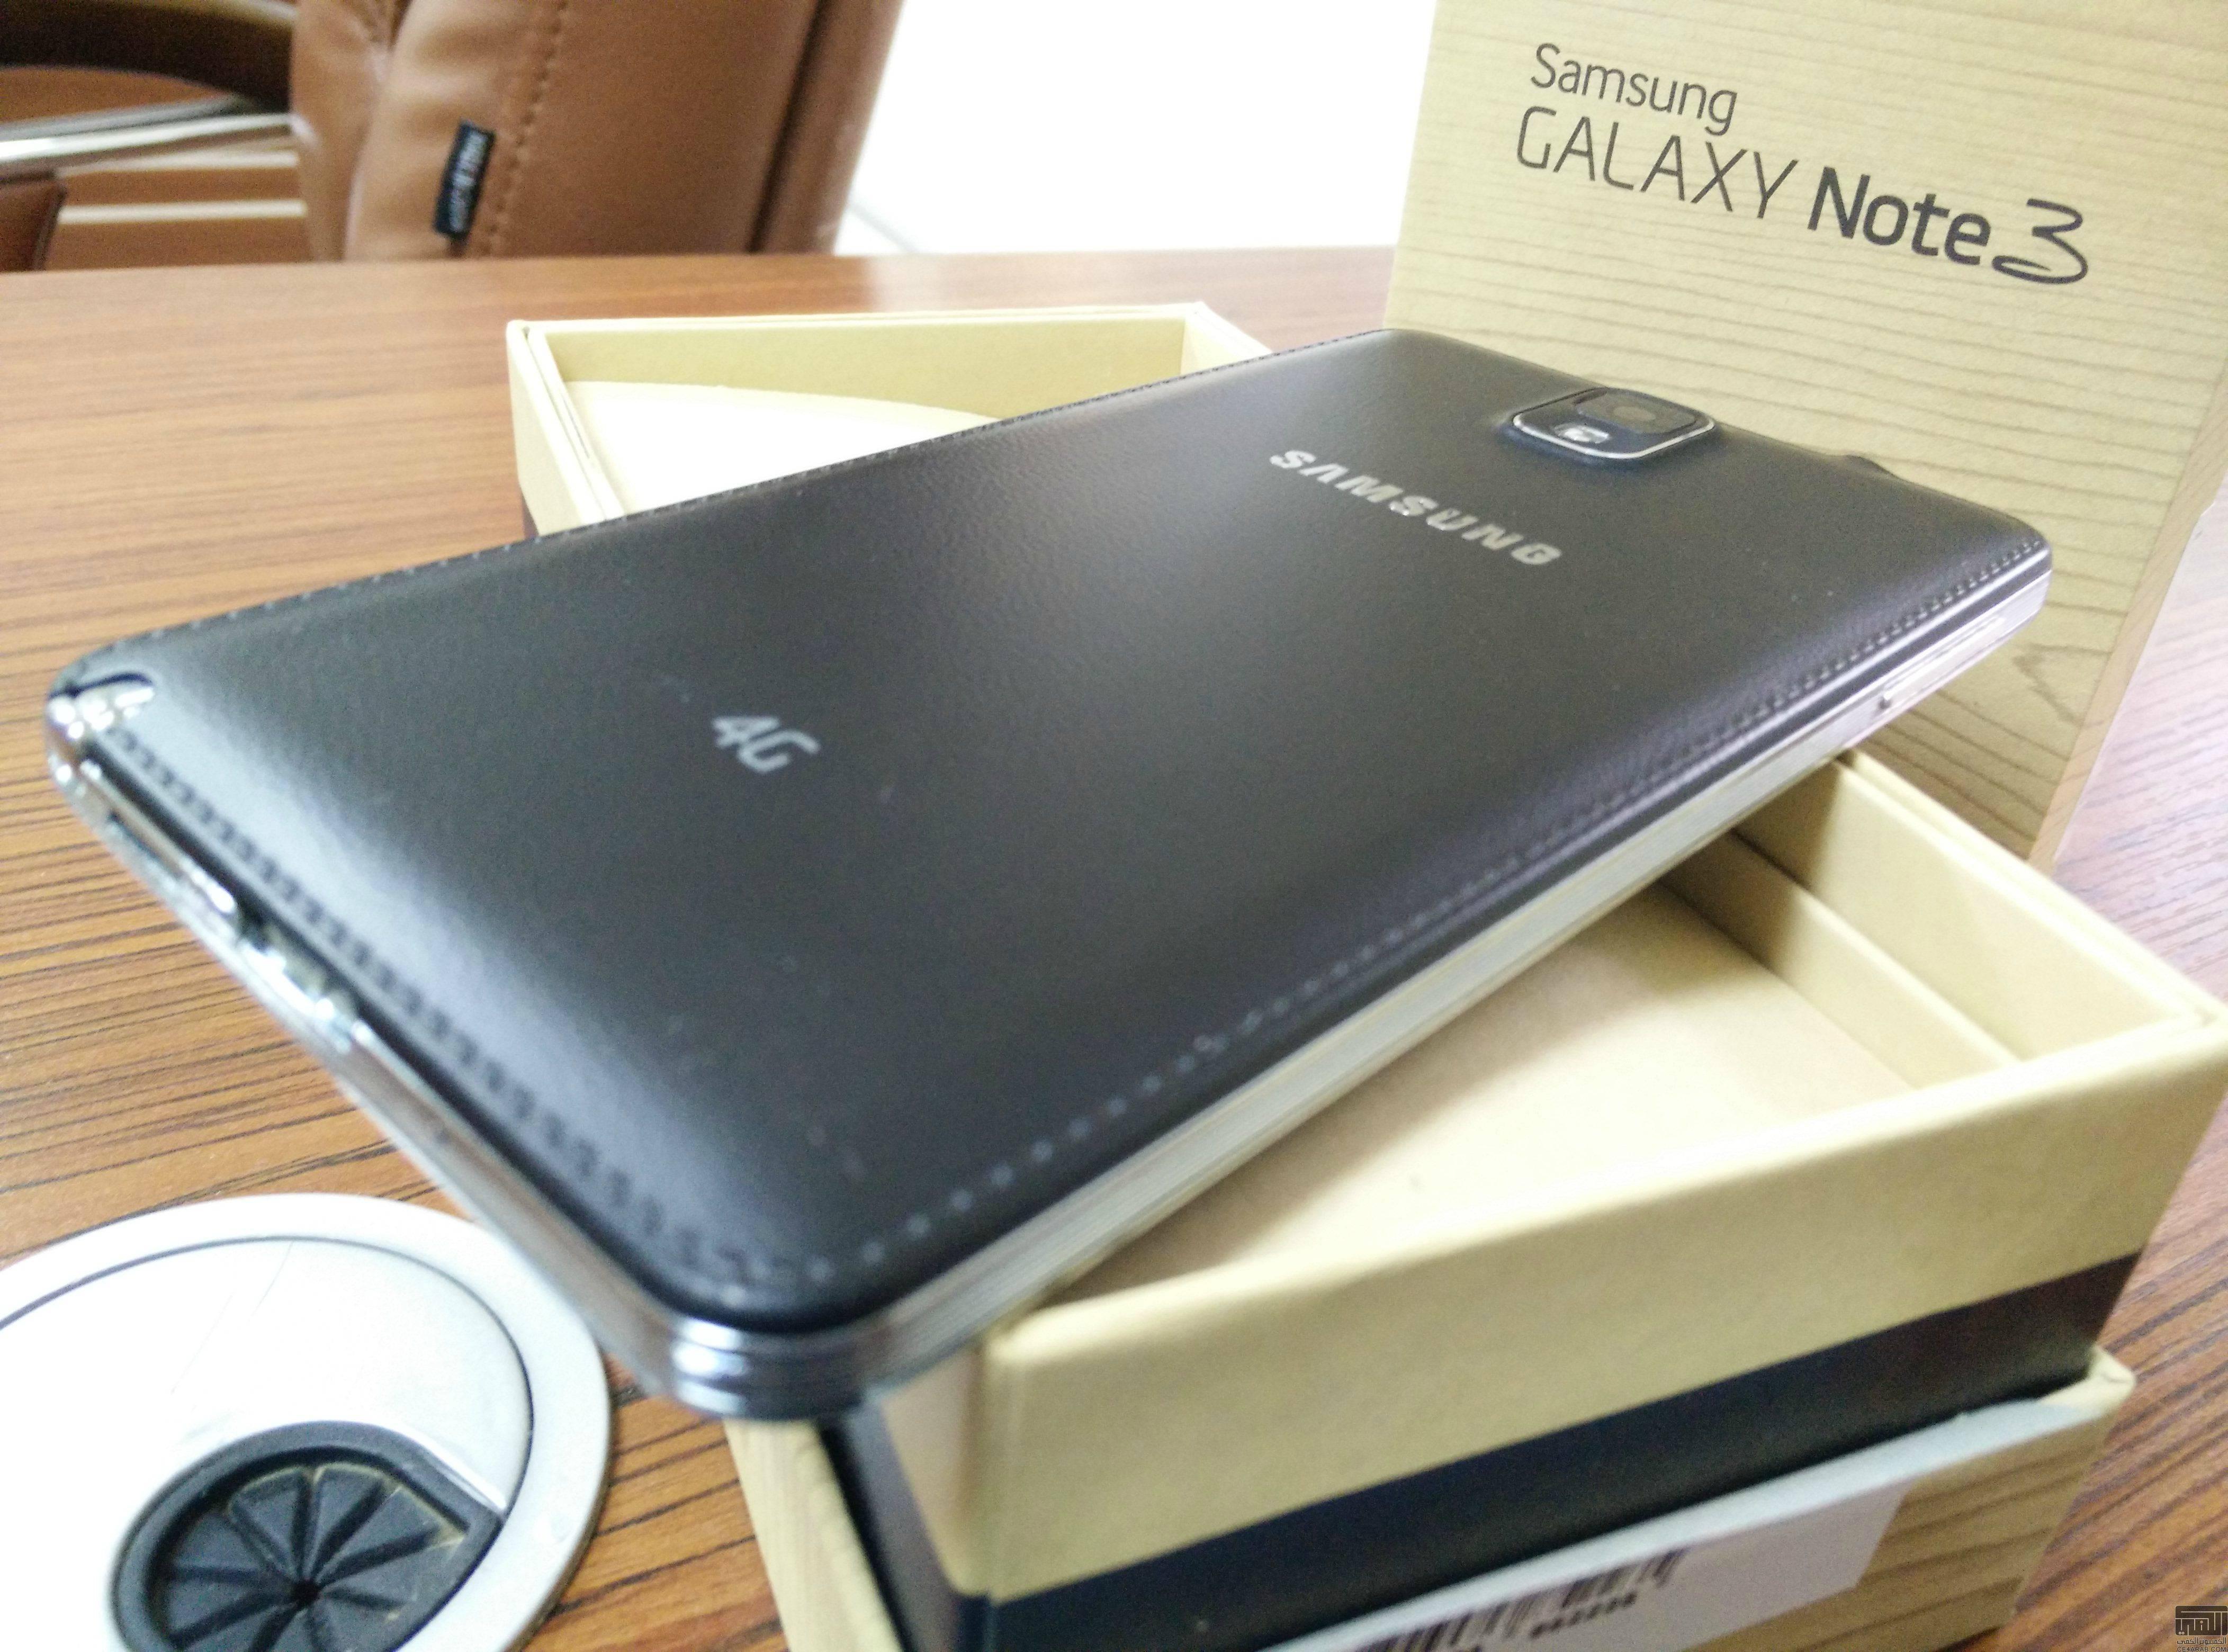 جالكسي نوت 3 أسود نظيف - Samsung Galaxy note3 - 32G - 4G